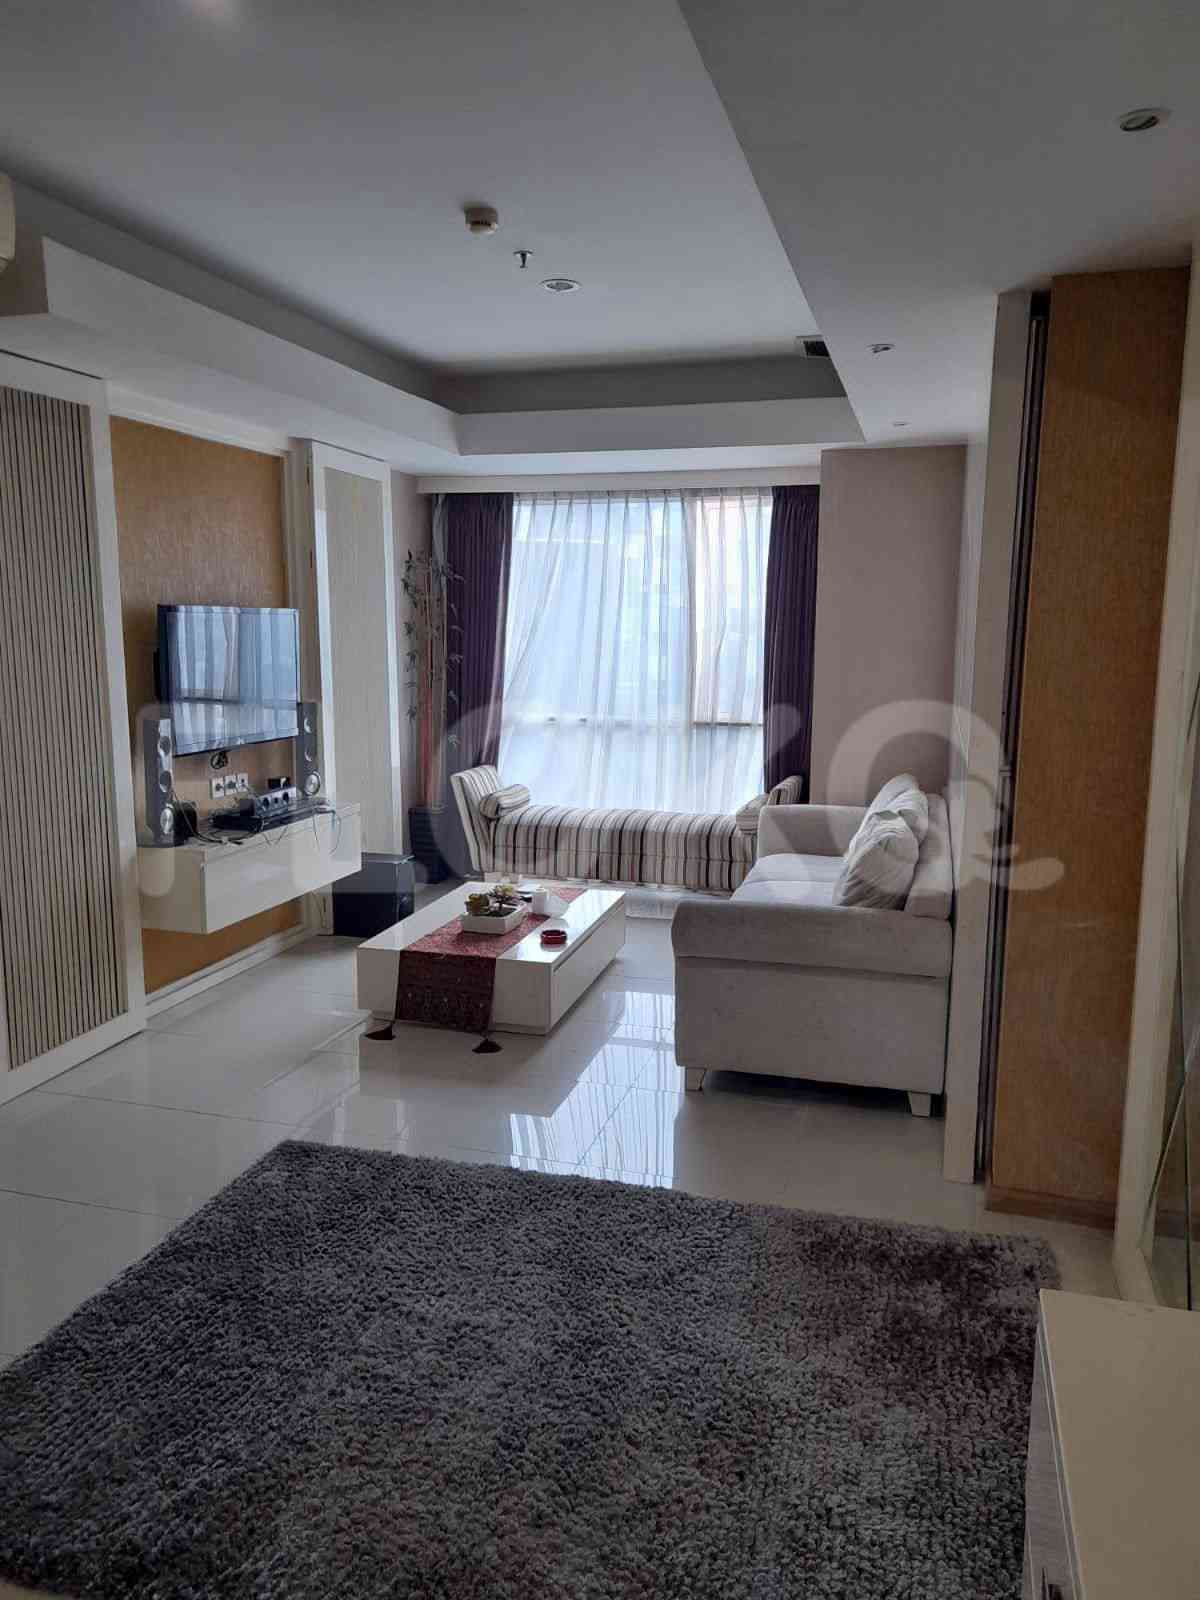 4 Bedroom on 10th Floor for Rent in Casa Grande - ftef92 1